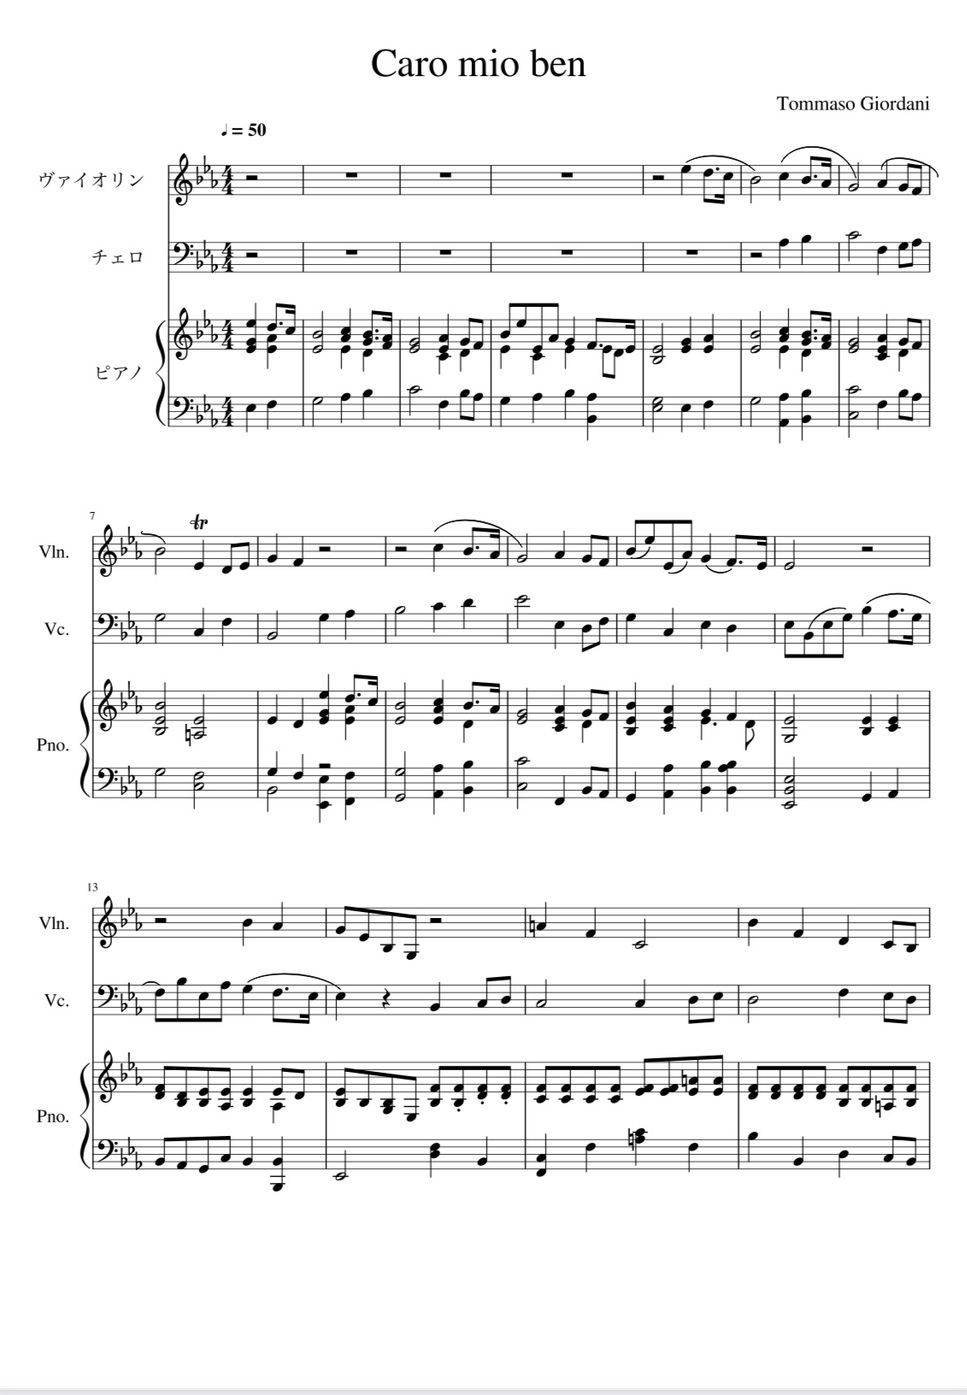 Tommaso Giordani - Caro mio ben Trio (イタリア歌曲、ピアノトリオ、コンサート用) by AsukA